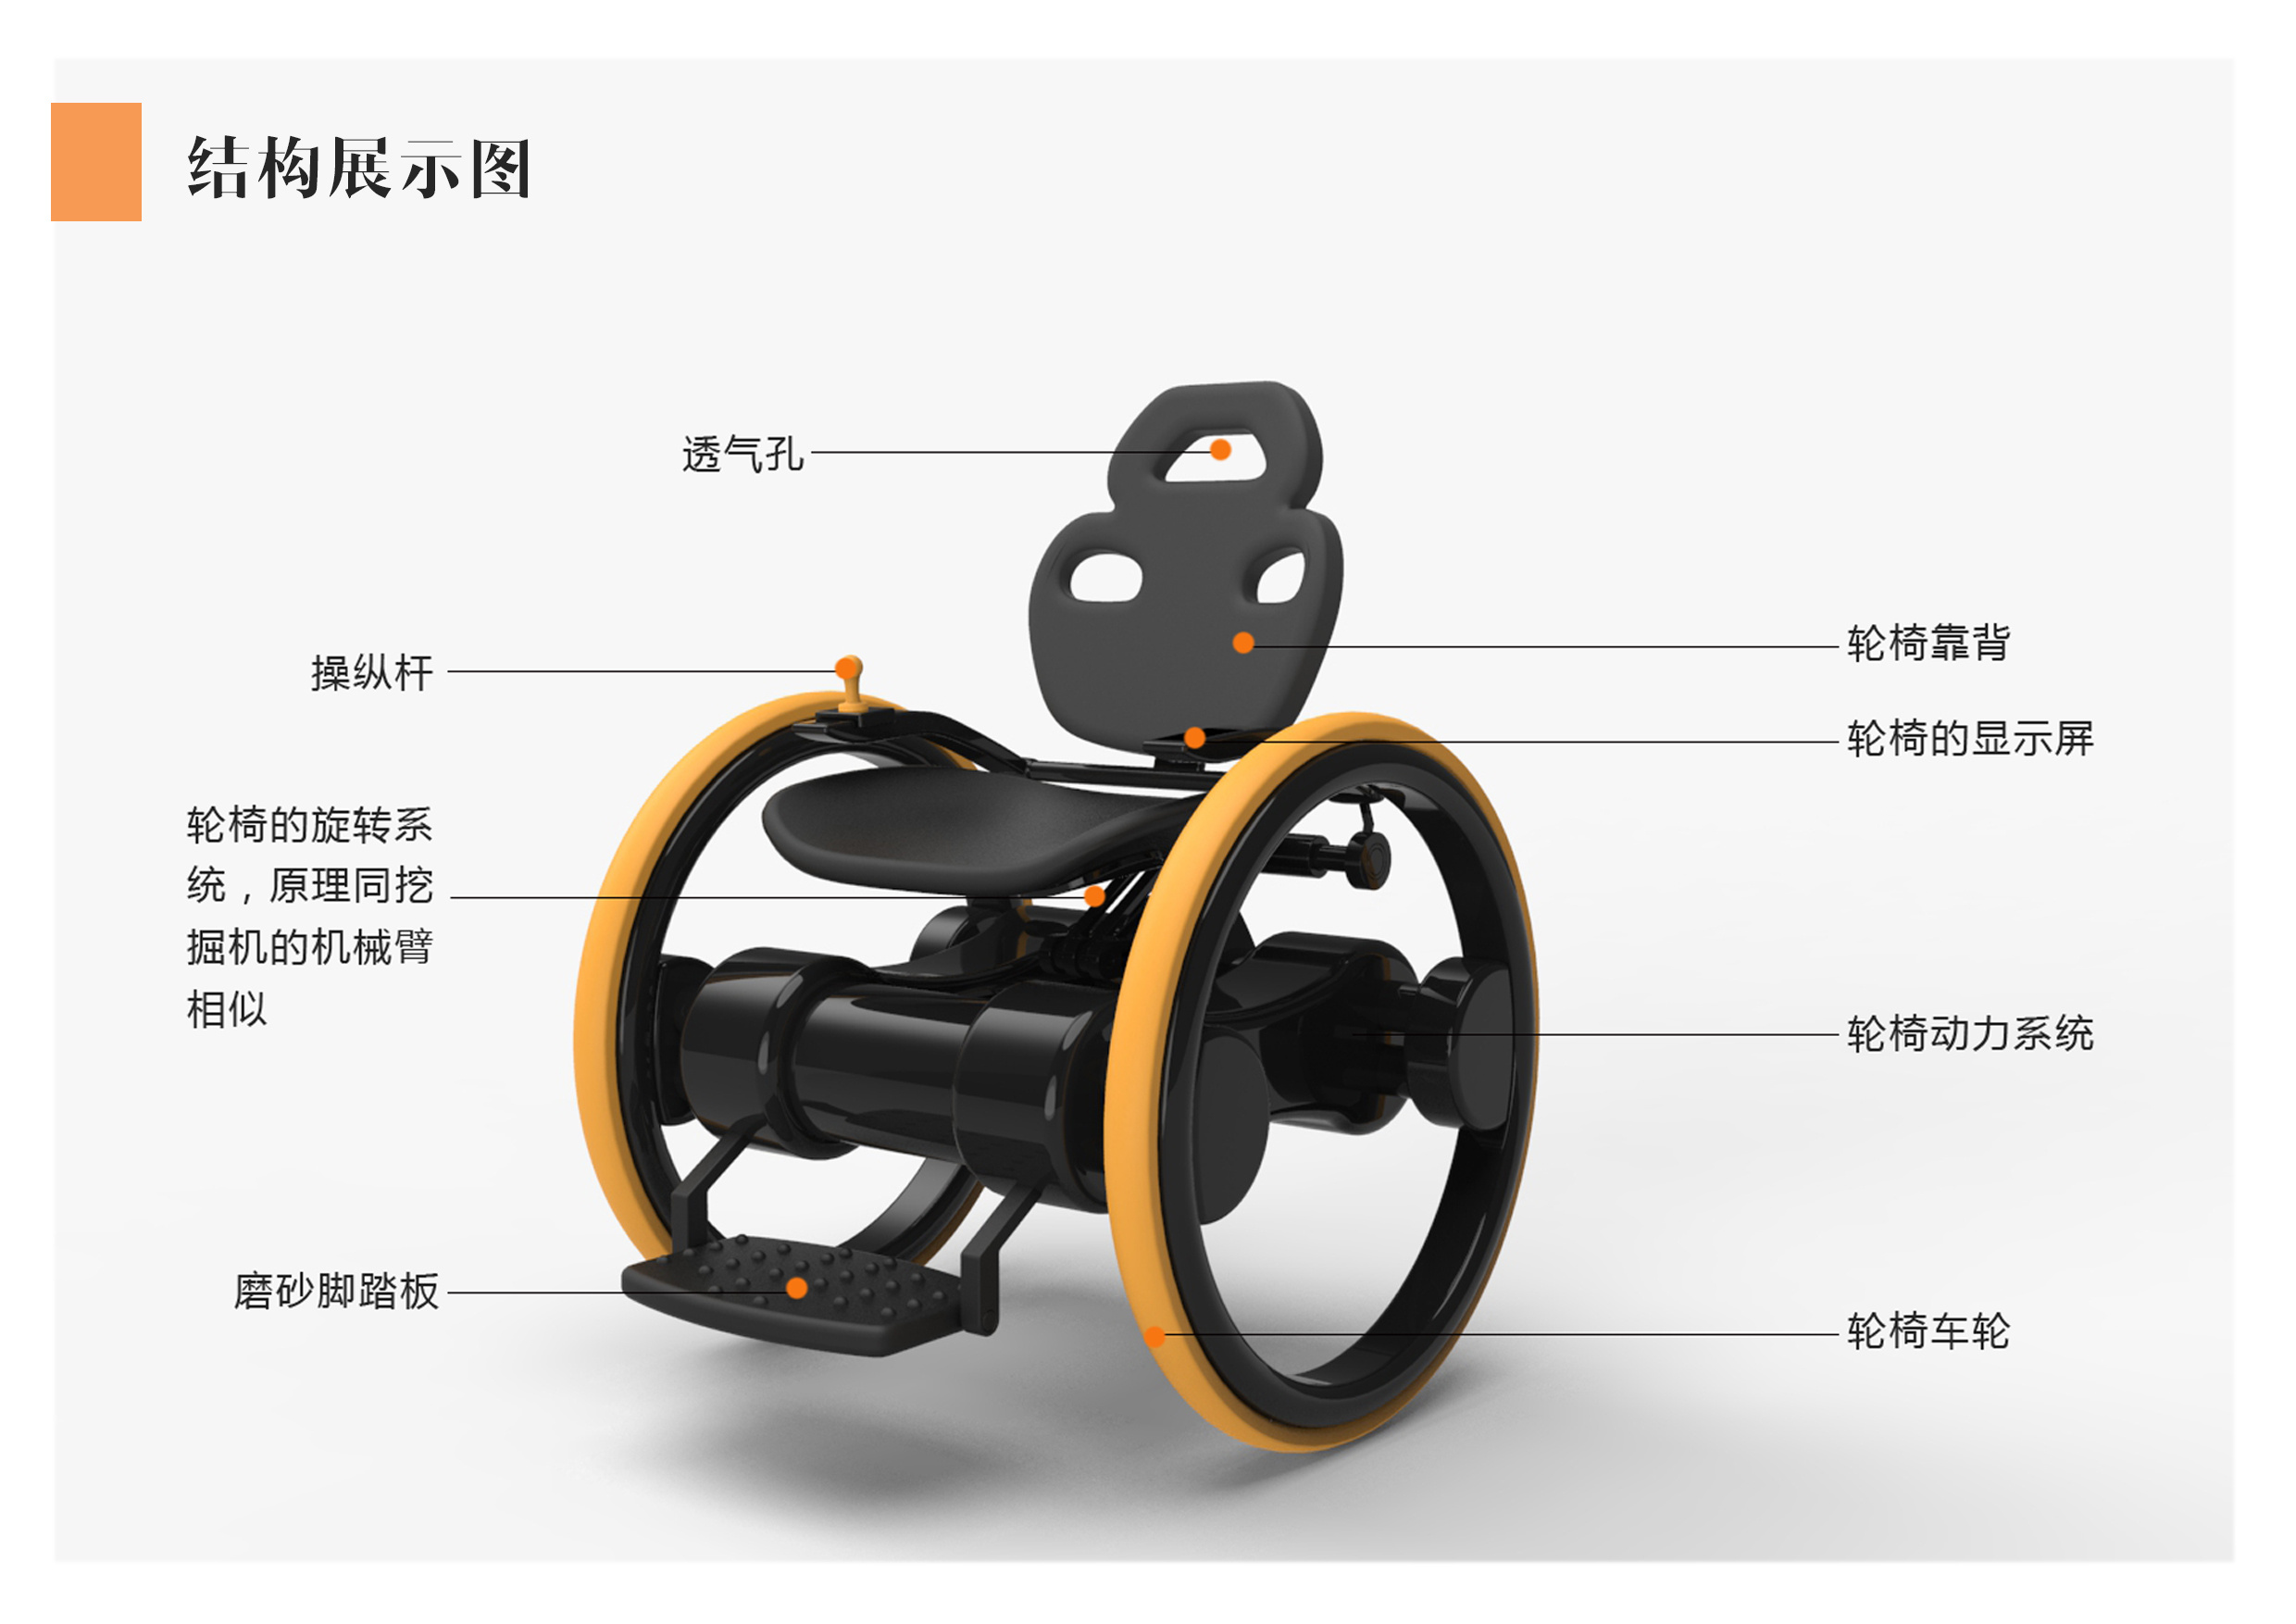 惊艳！来自雅马哈的两款超美腻轮椅设计 - 普象网